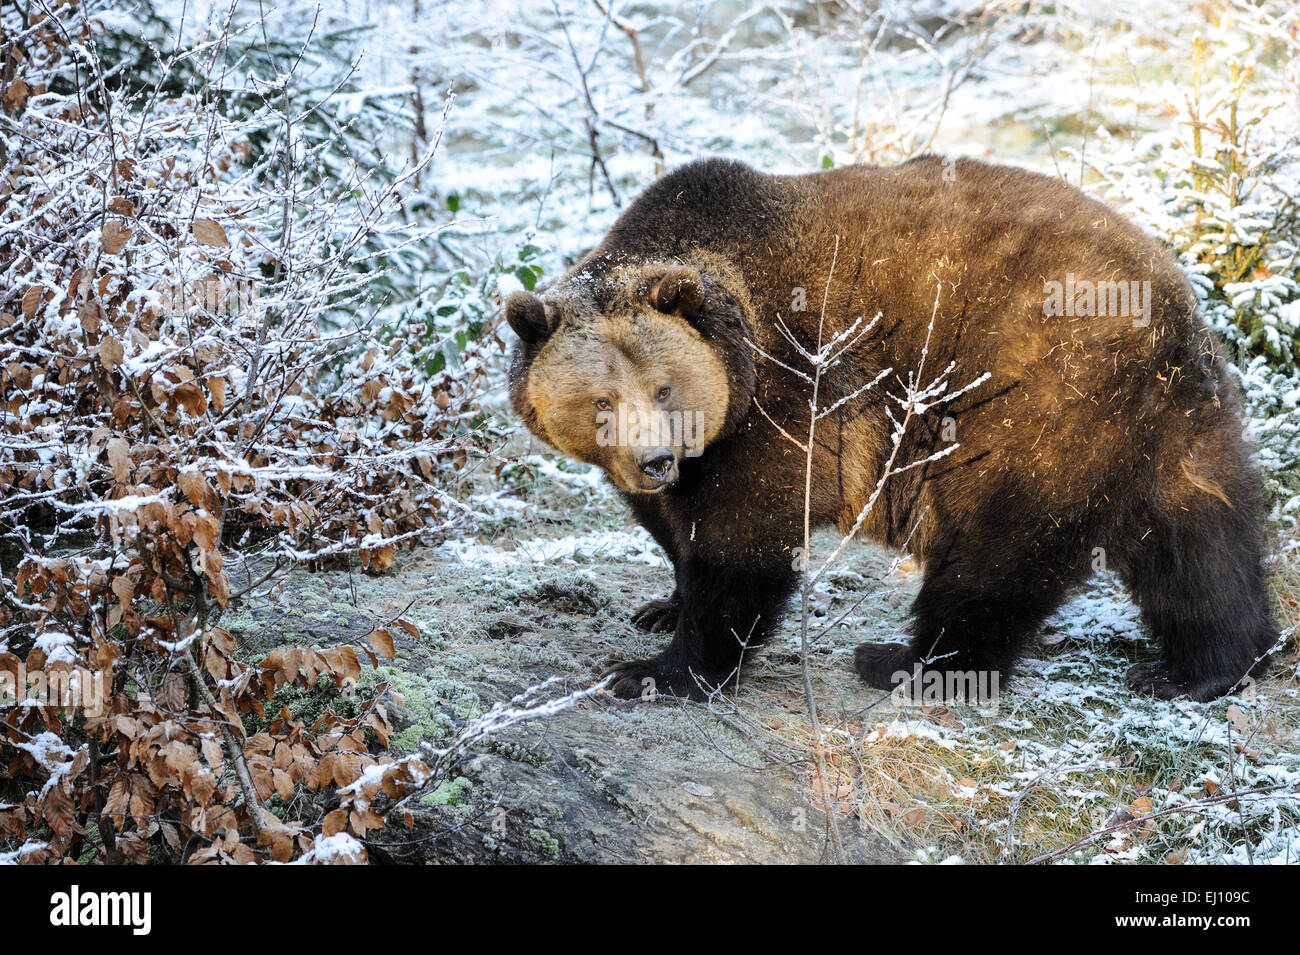 L'ours brun, ours, ours, fourrure, européenne, les animaux prédateurs, Ursus arctos, animaux sauvages, hiver, fourrure d'hiver Banque D'Images